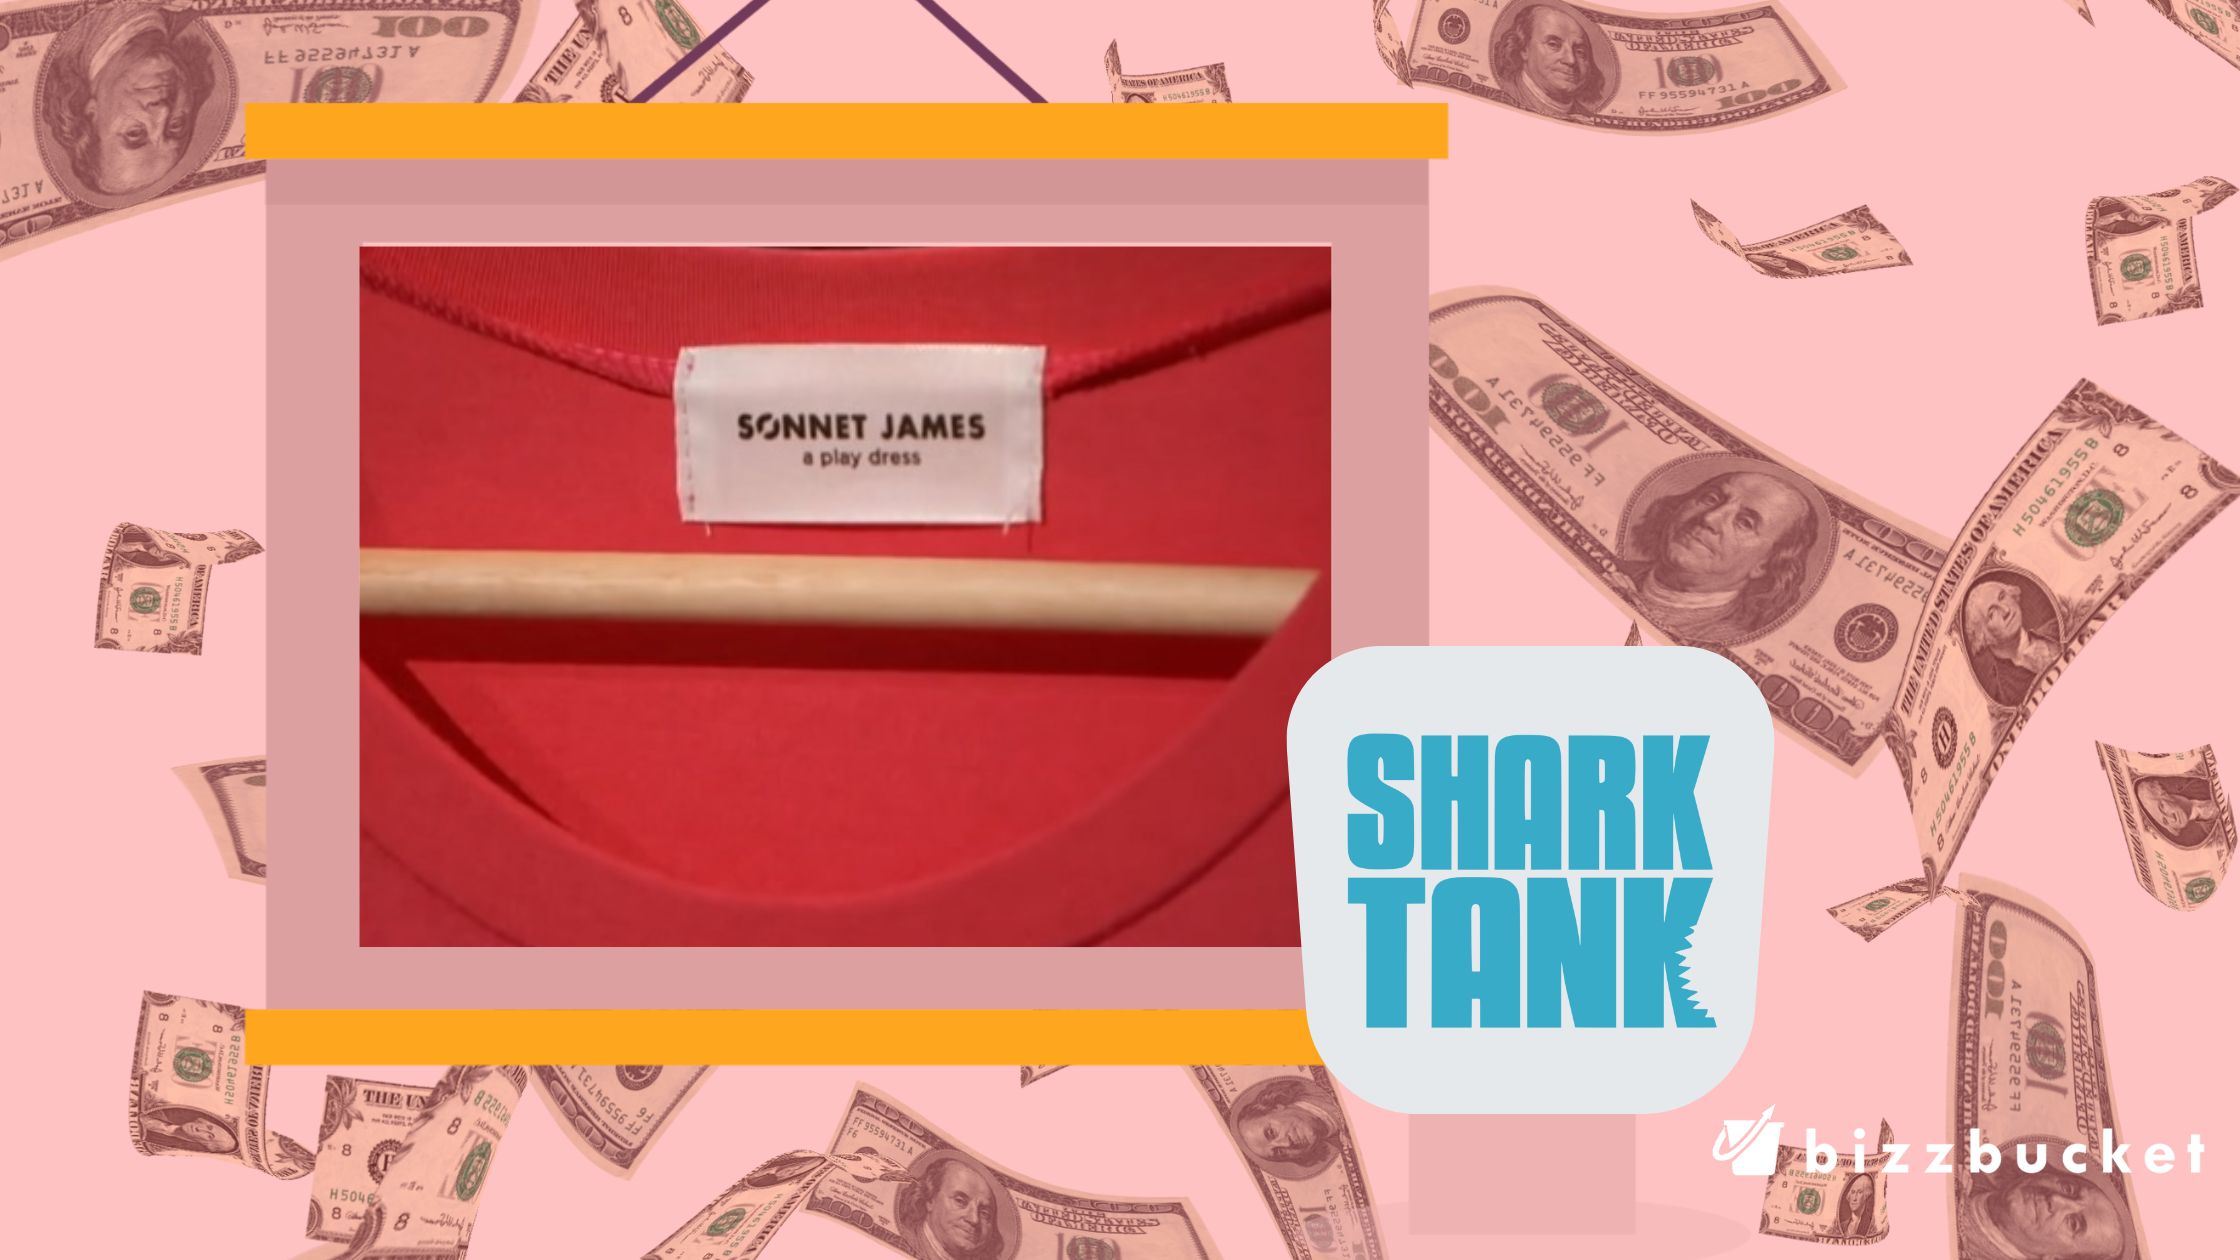 Sonnet James shark tank update